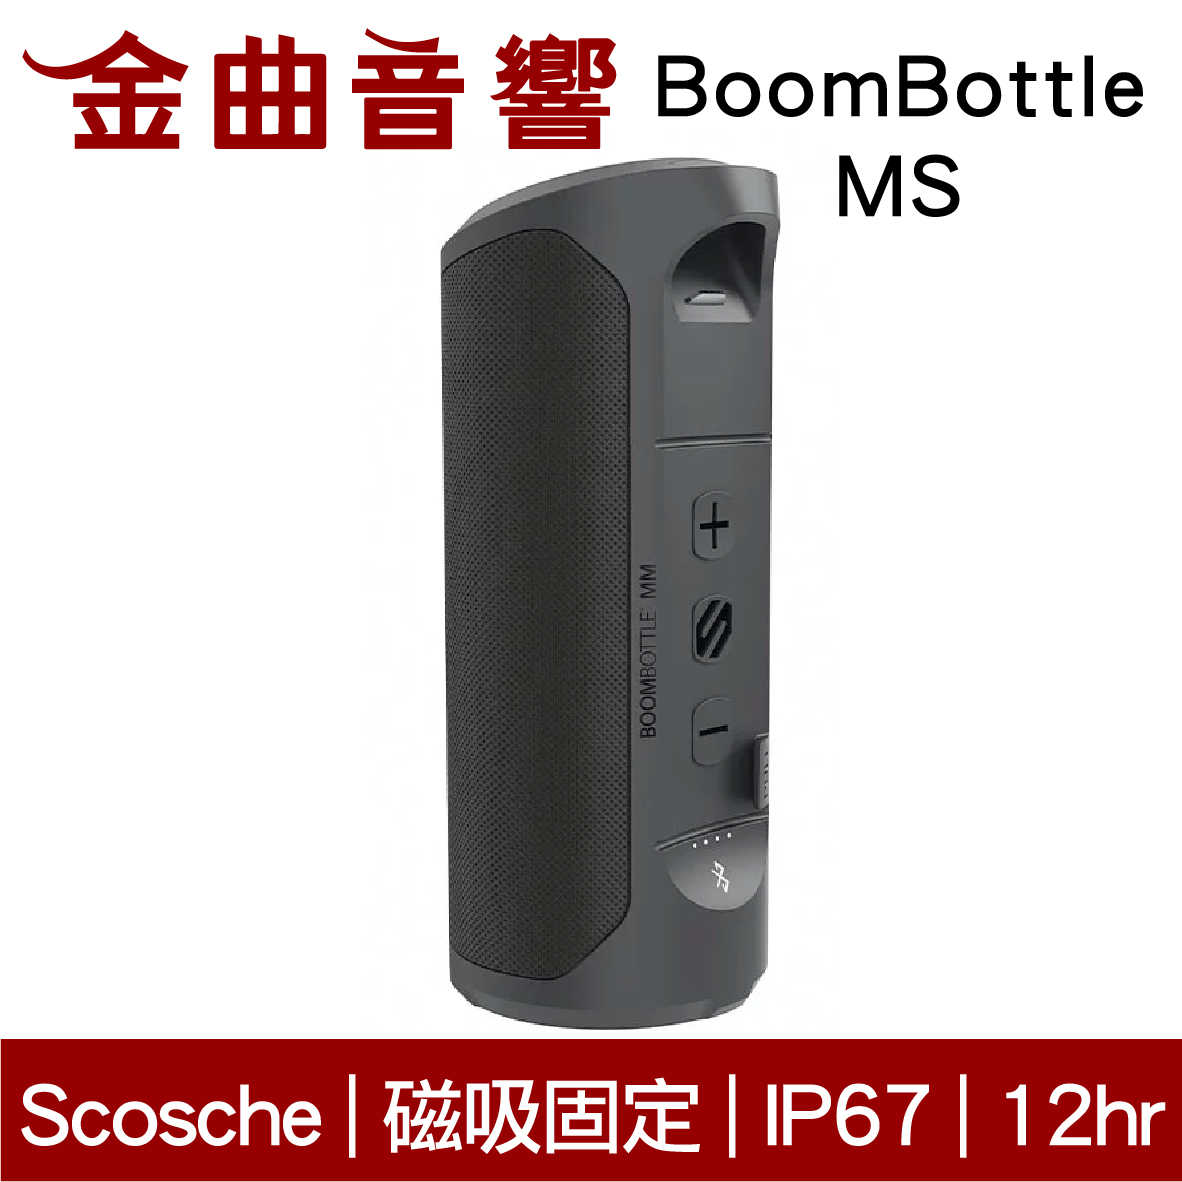 Scosche BoomBottle MS 磁吸固定 IP67 長效續航 雙模音場 藍牙喇叭 | 金曲音響